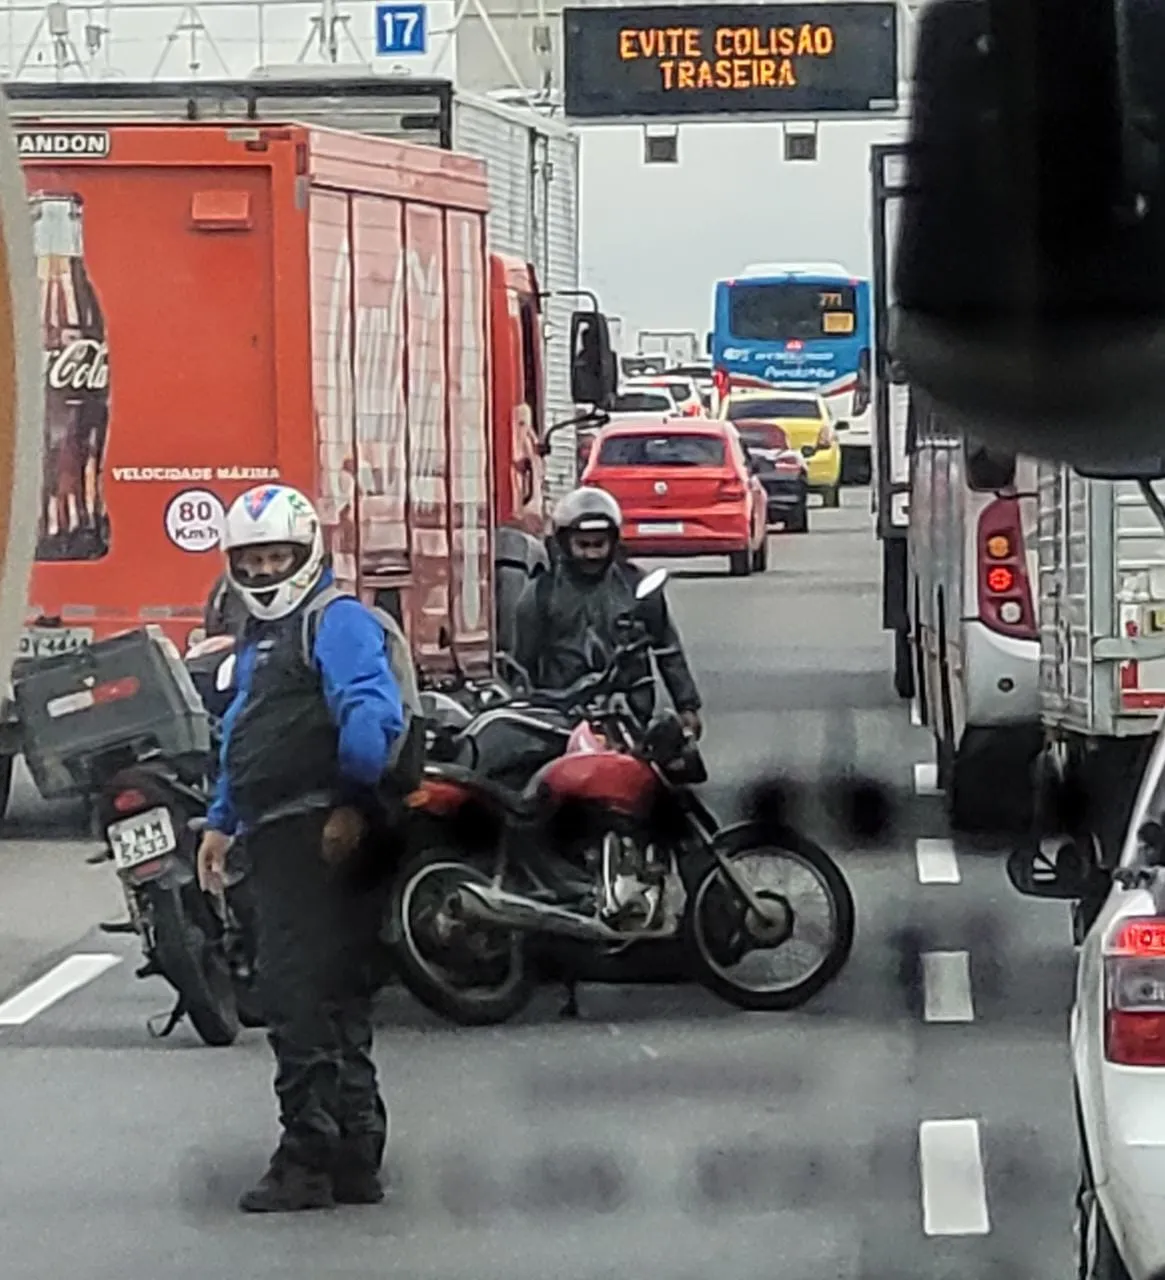 Condutores de outras motos pararam para prestar apoio a vítima